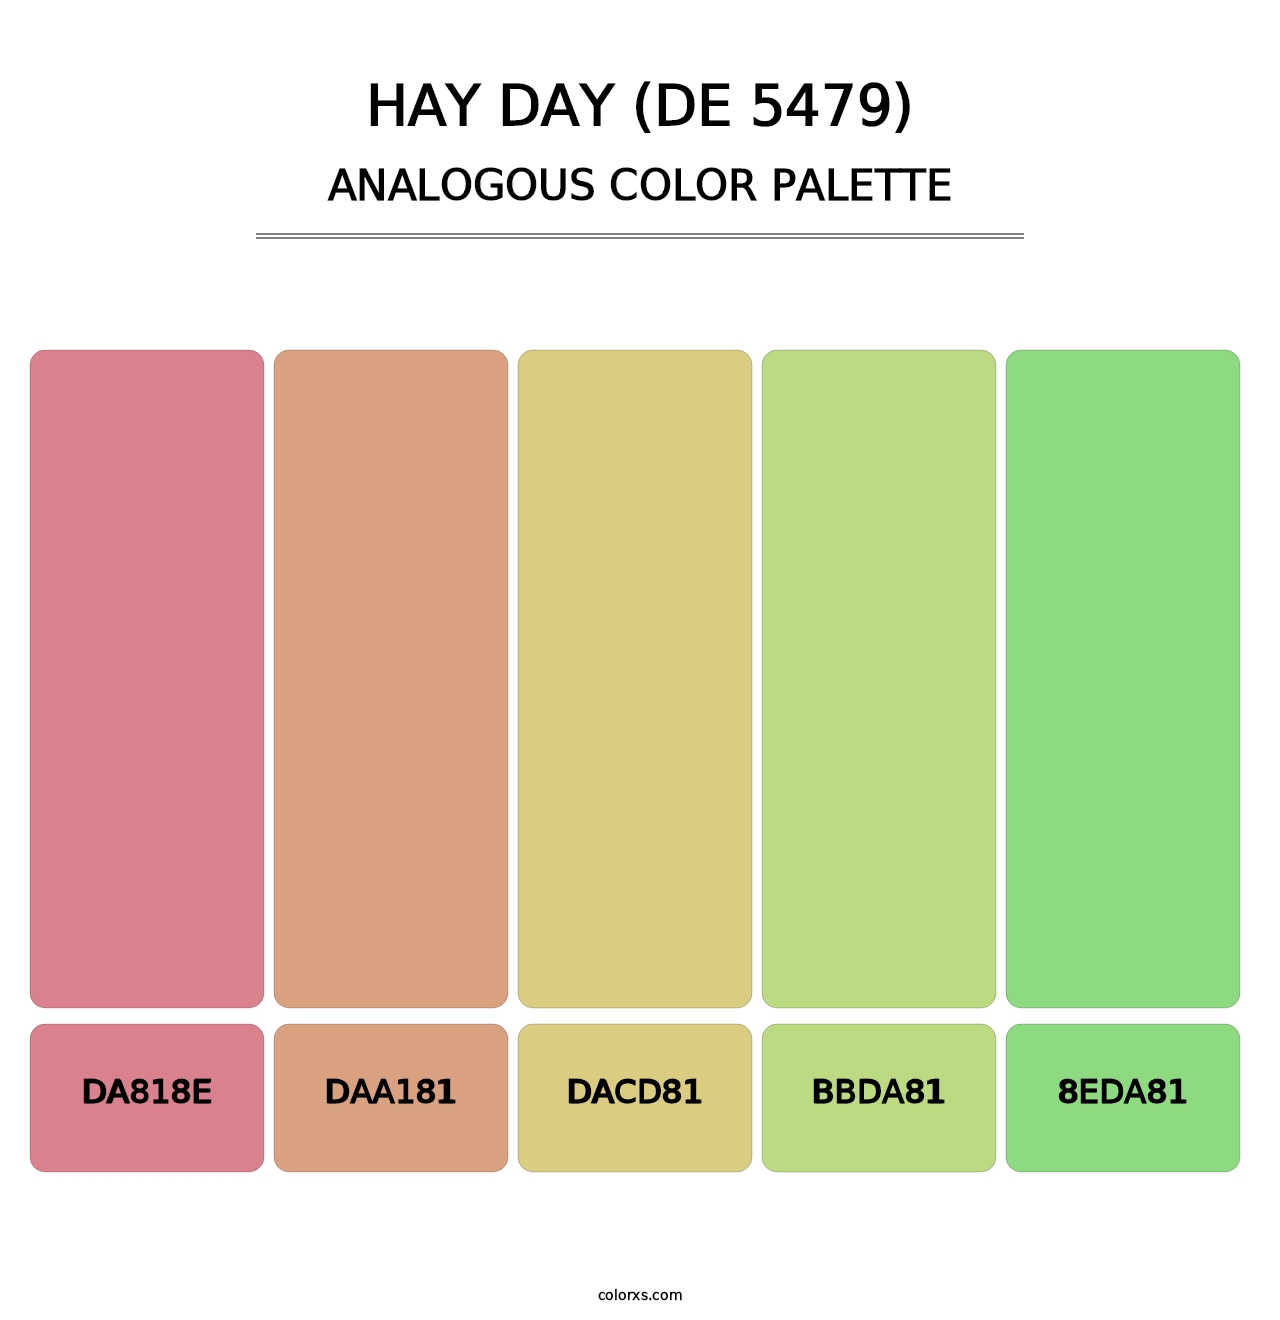 Hay Day (DE 5479) - Analogous Color Palette